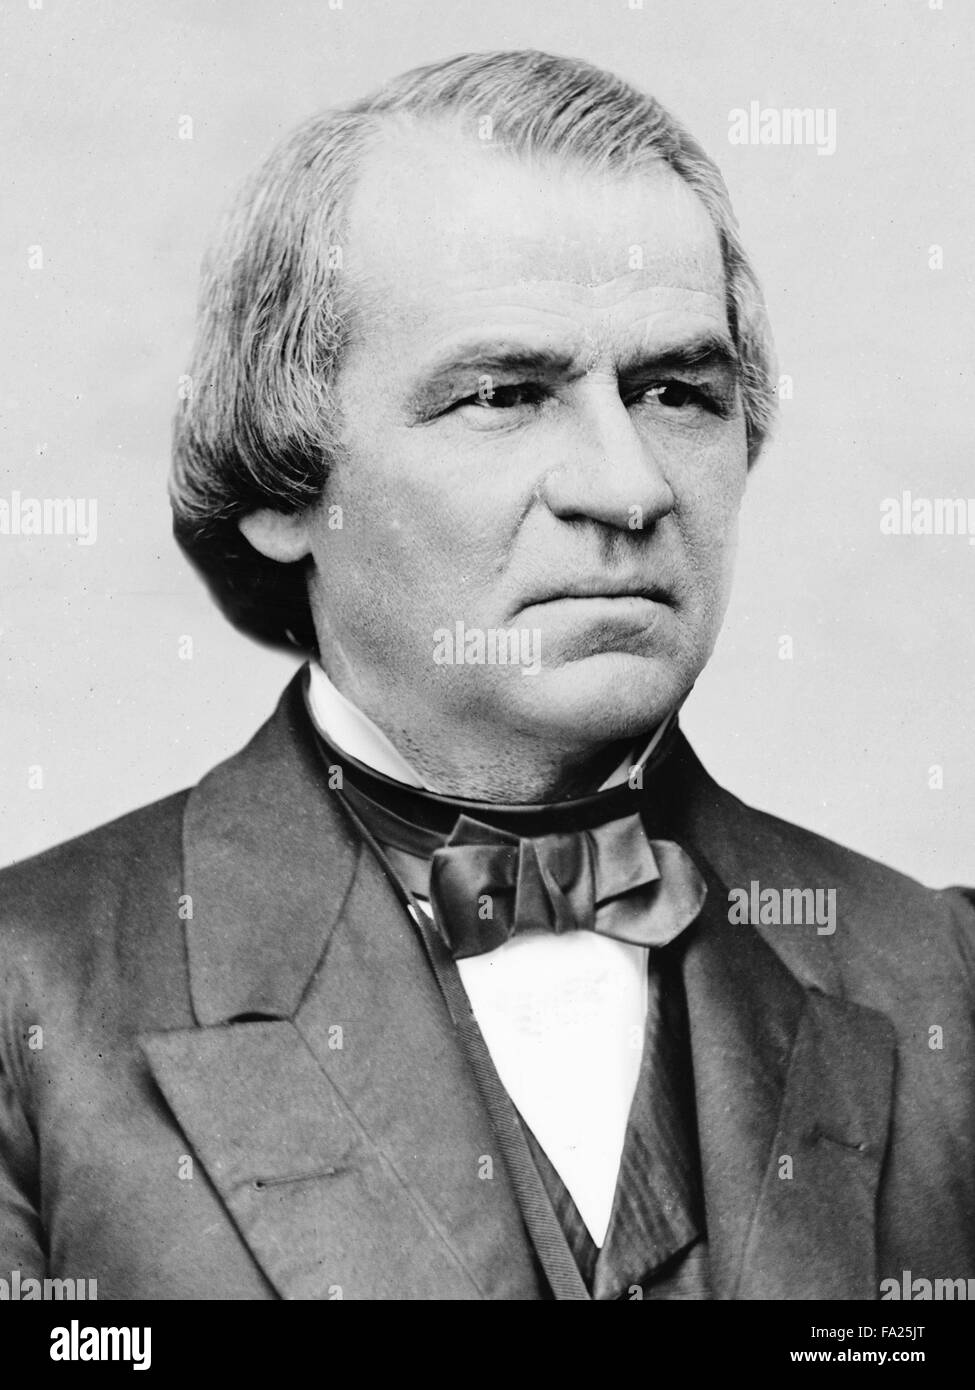 Andrew Johnson (29. Dezember 1808 – 31. Juli 1875) war der 17. Präsident der Vereinigten Staaten, darunter von 1865 bis 1869. Stockfoto